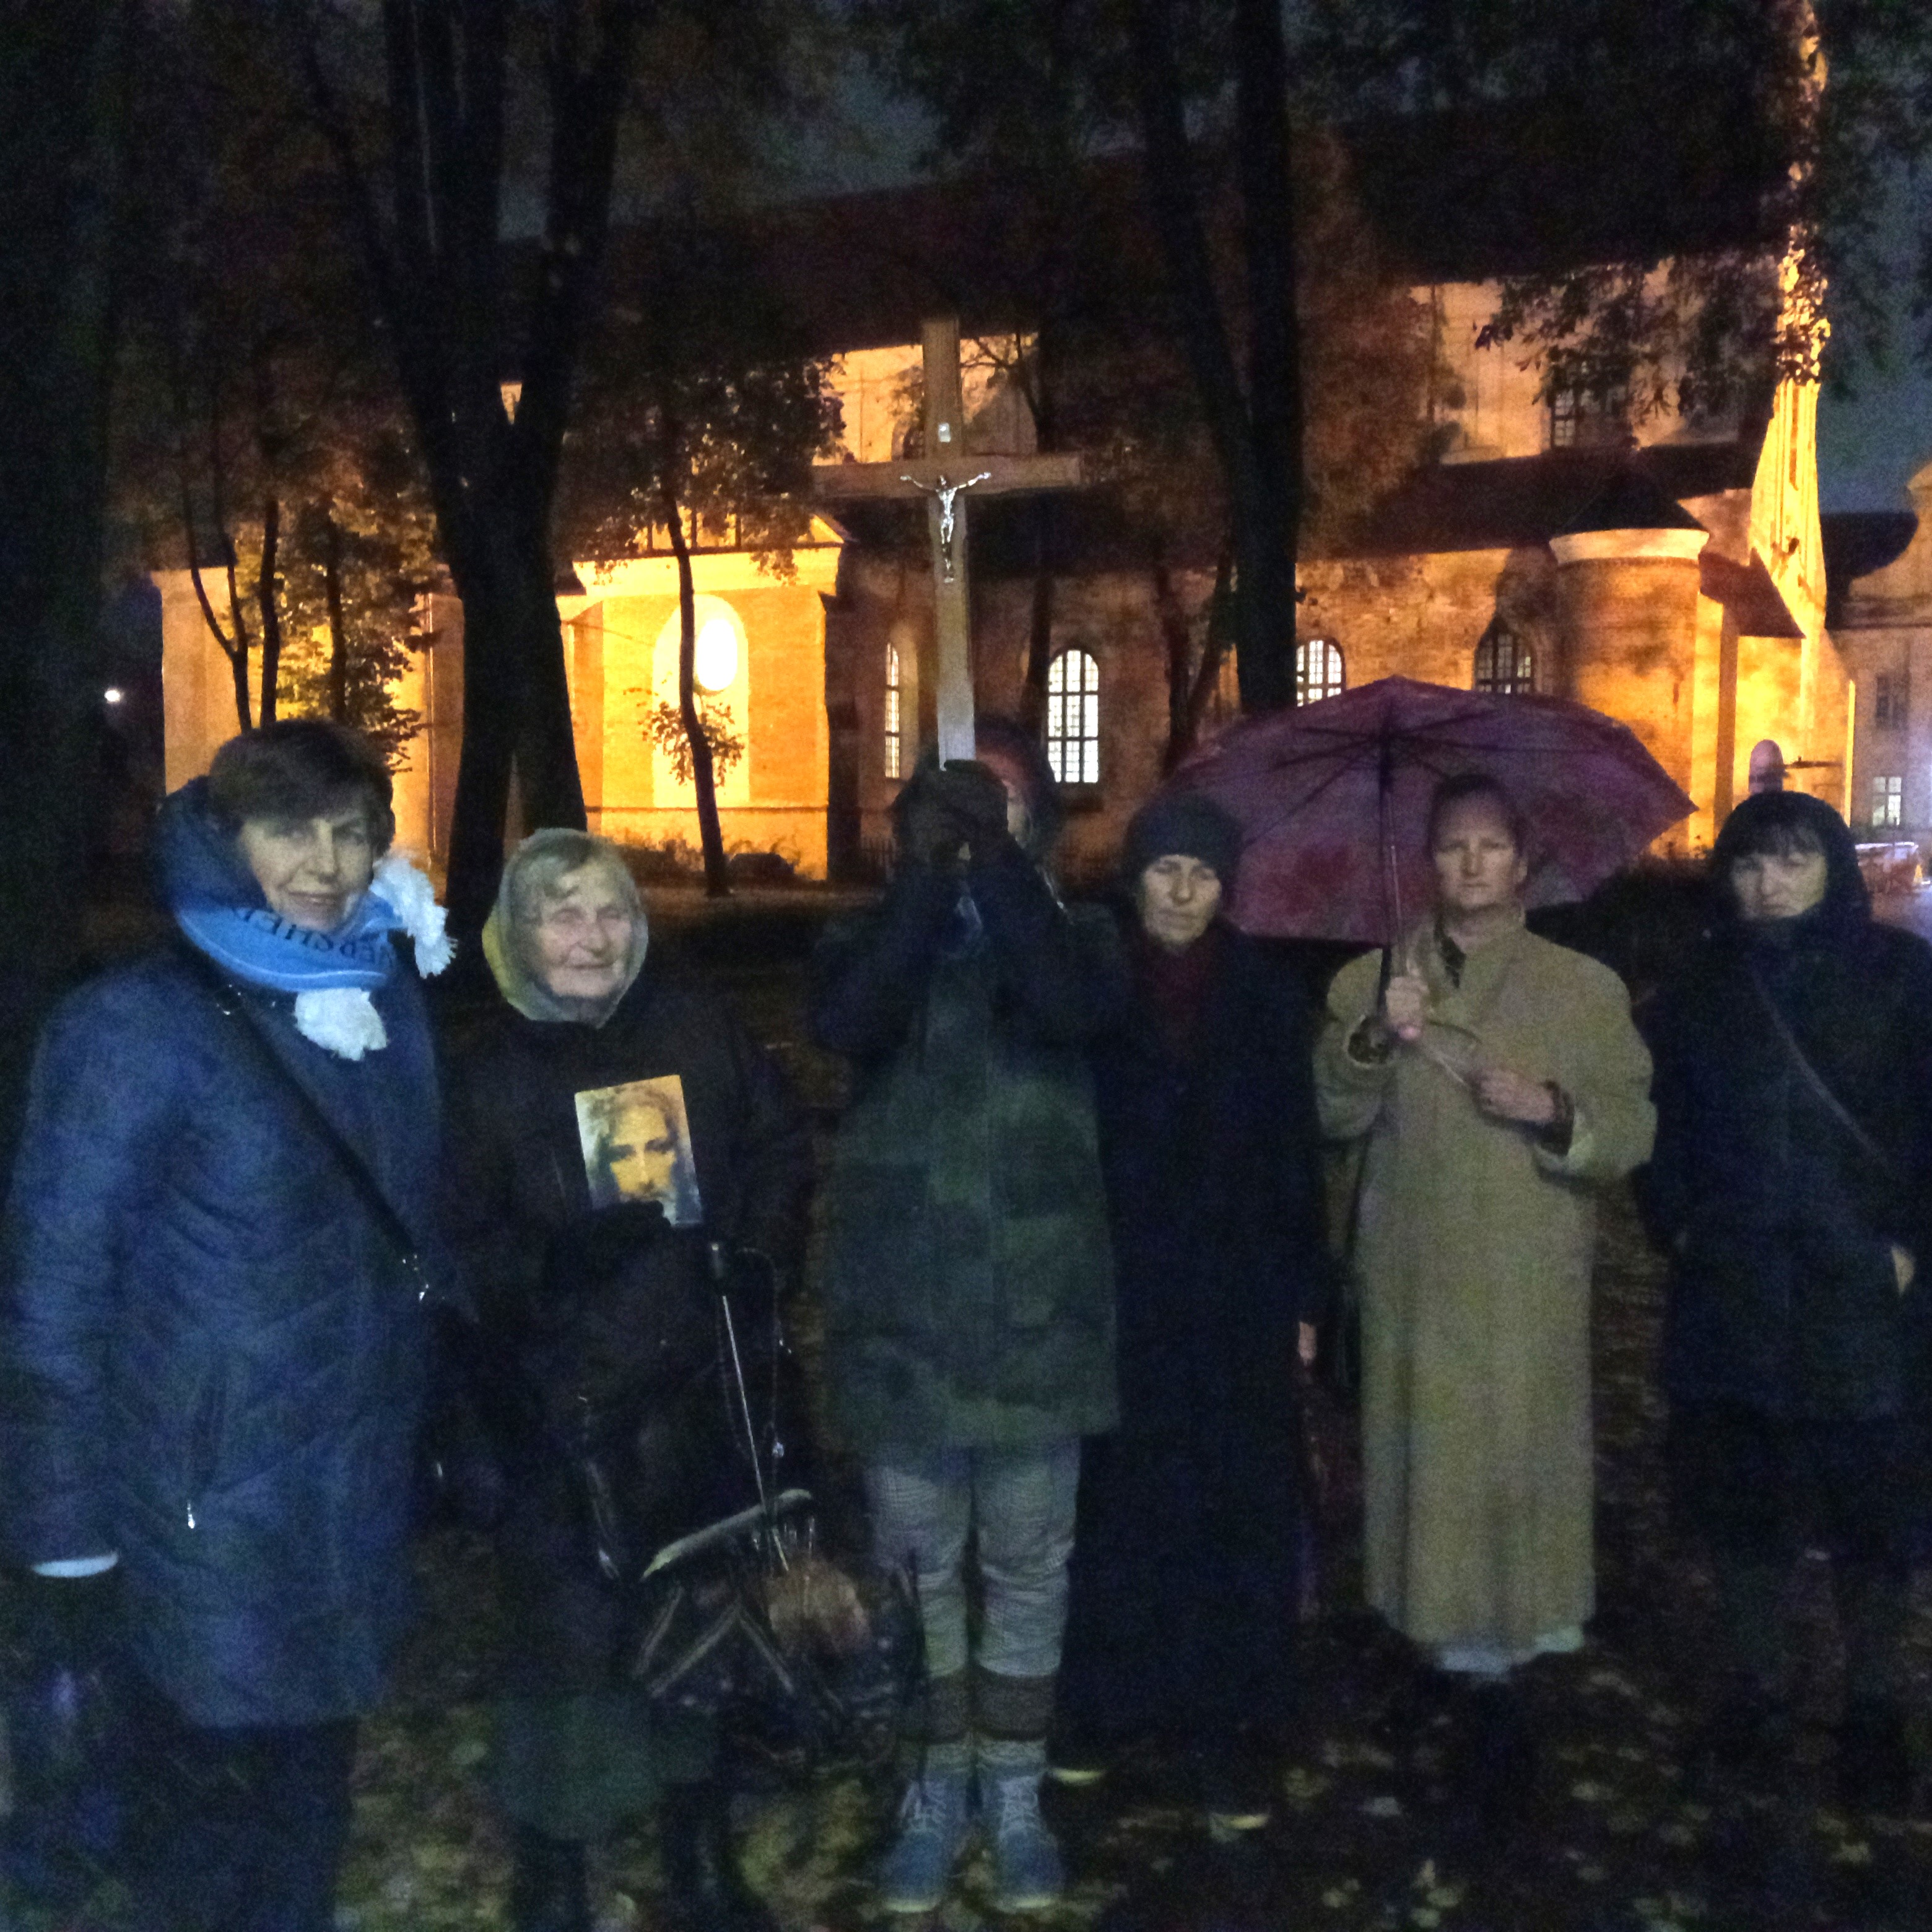 Spalio 25d. 18.15 Vilniuje meldėsi 6 maldininkai
